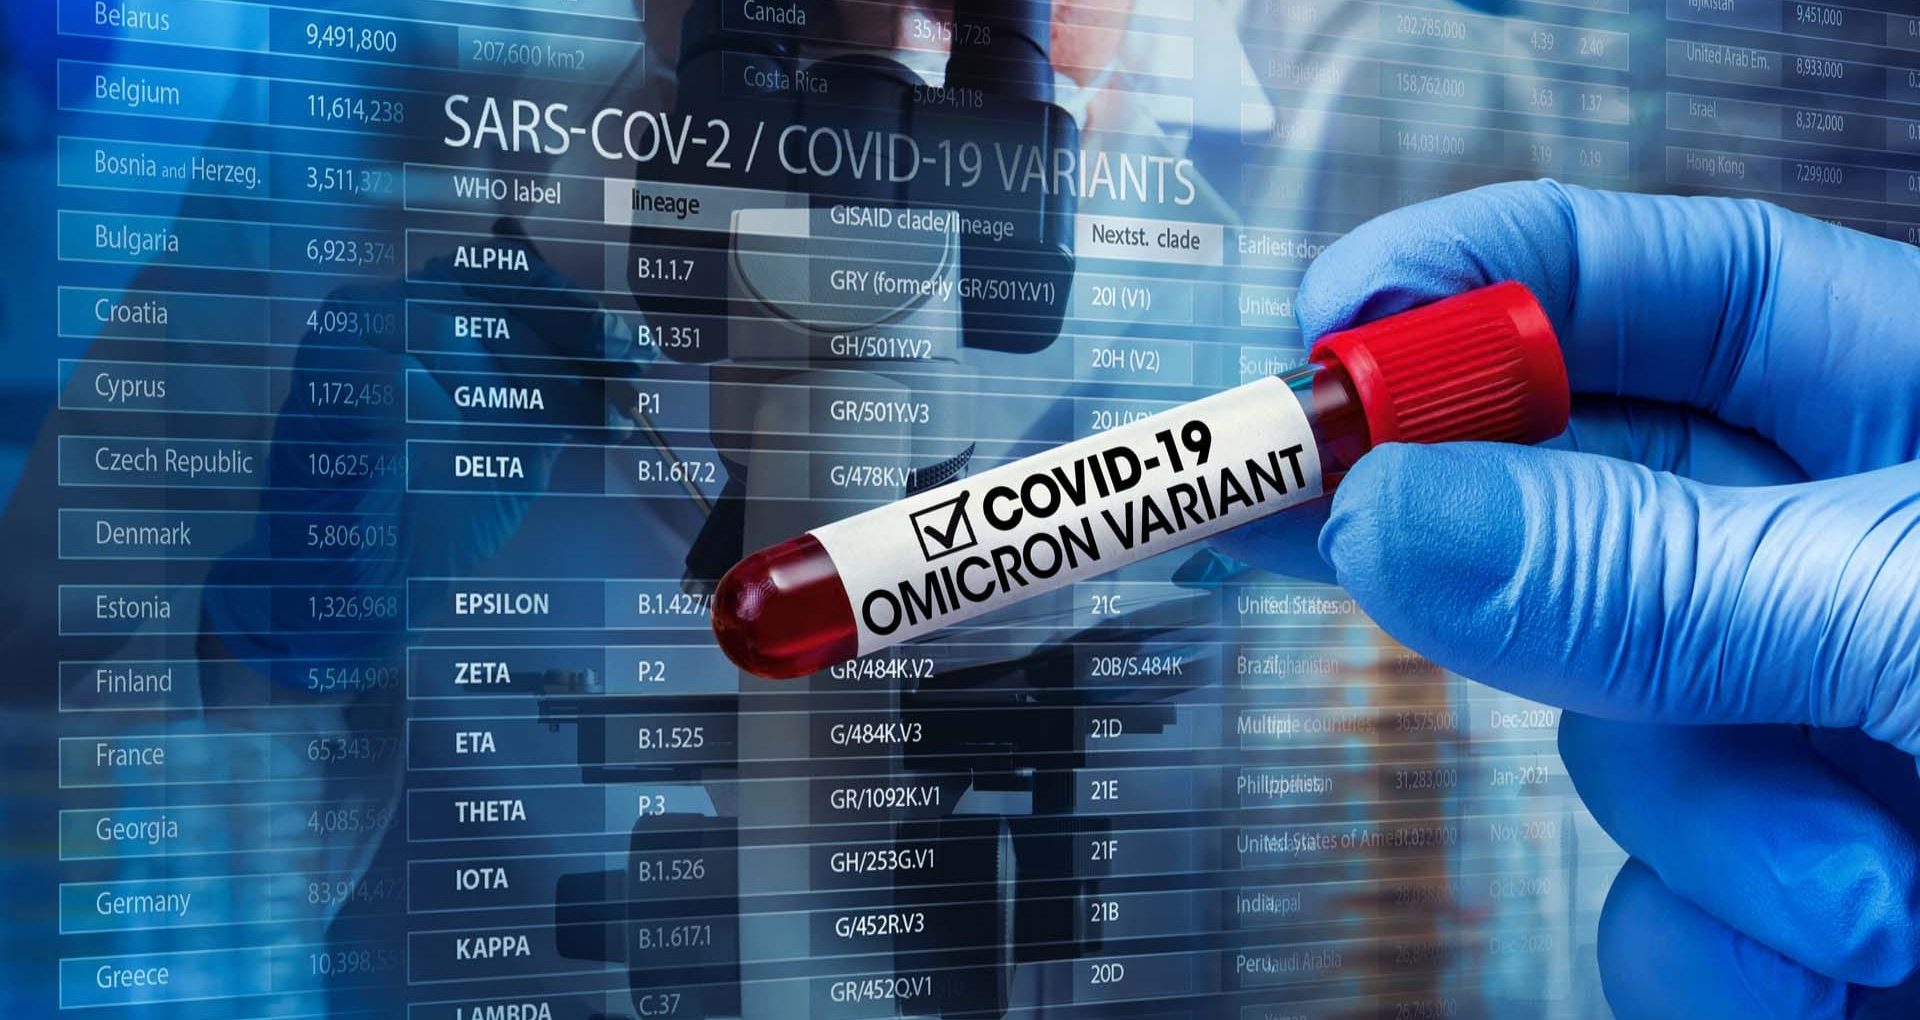 44 de cazuri confirmate de SARS-CoV-2 Omicron au fost raportate de 11 țări din UE și Spațiul Economic European, anunță Centrul European de Prevenire și Control al Bolilor